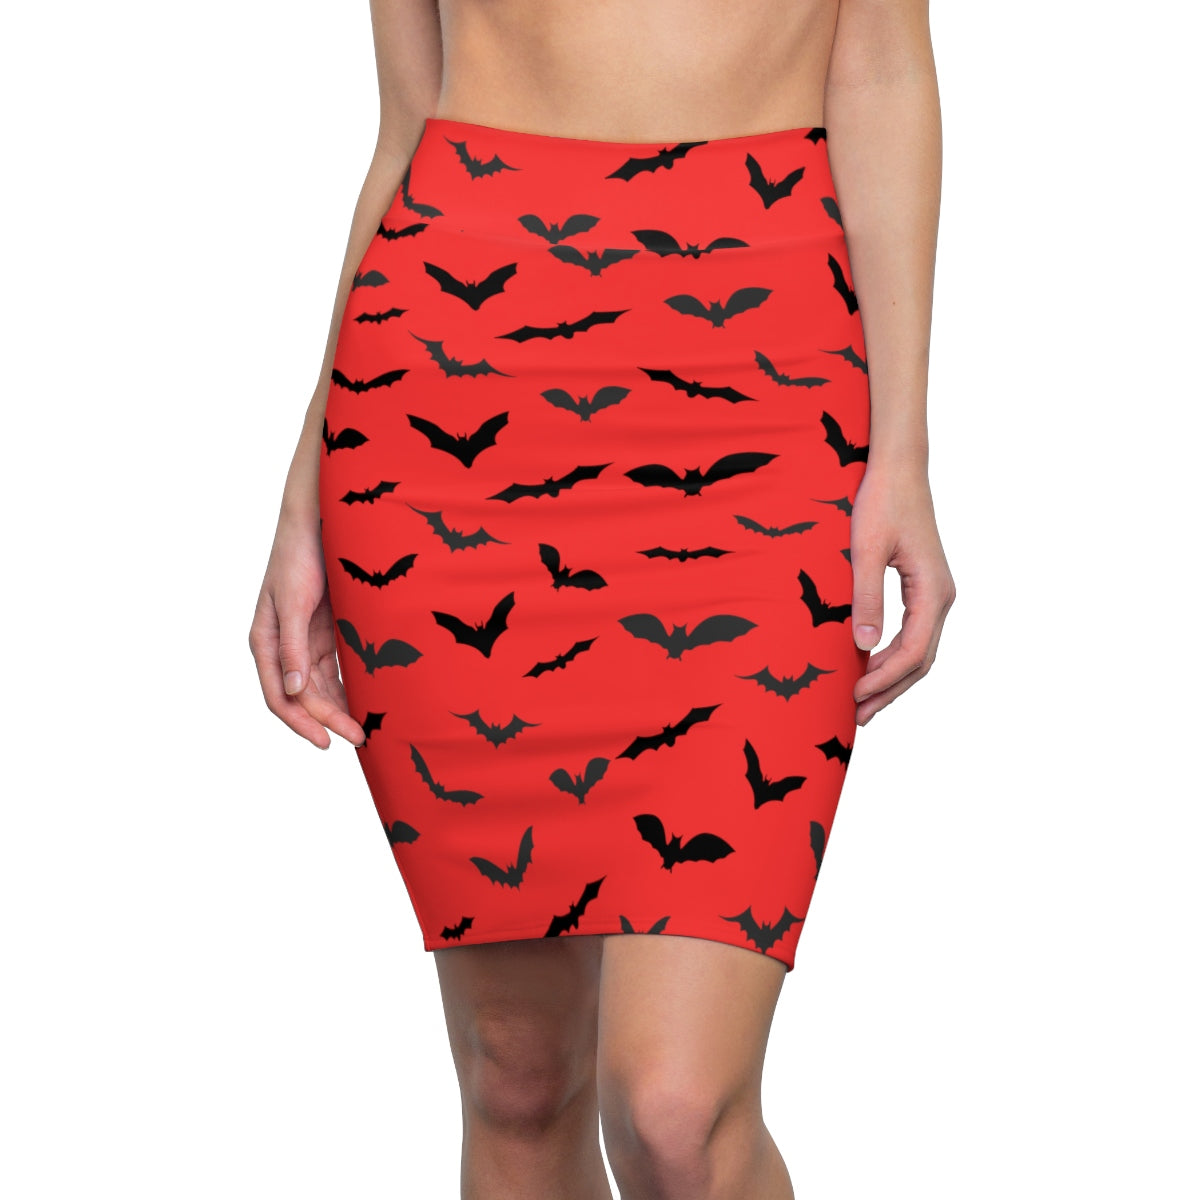 Red Black Halloween Bats Print Women's Pencil Skirt- Made in USA (US Size: XS-2XL)-Pencil Skirt-L-4 oz.-Heidi Kimura Art LLC